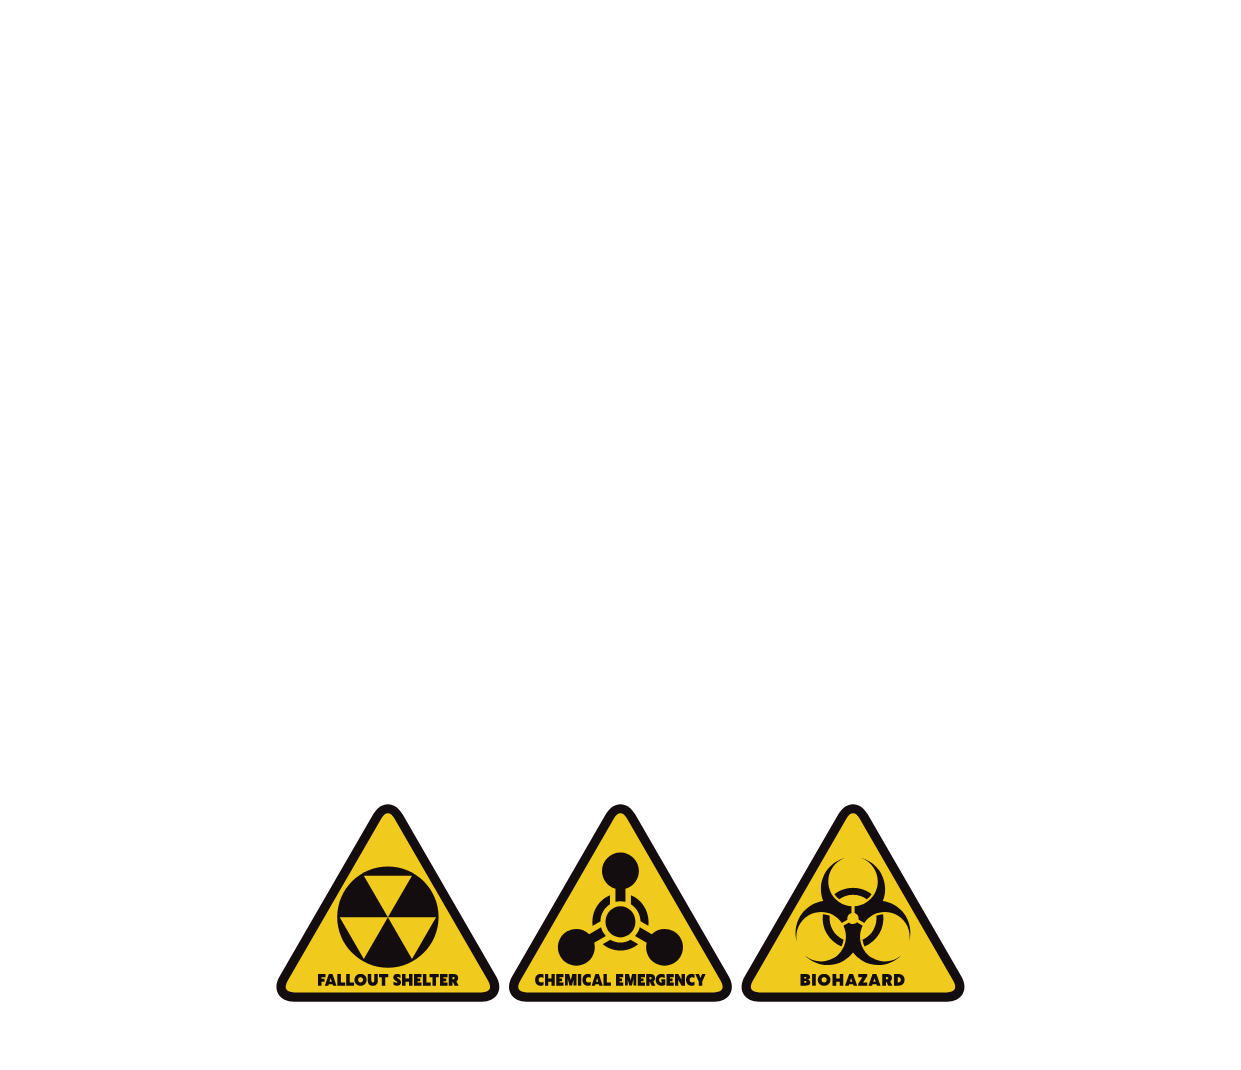 いざという時、家族を護る。CRISIS-01　一般家庭普及型 防災核シェルター　イスラエル製特殊フィルター搭載